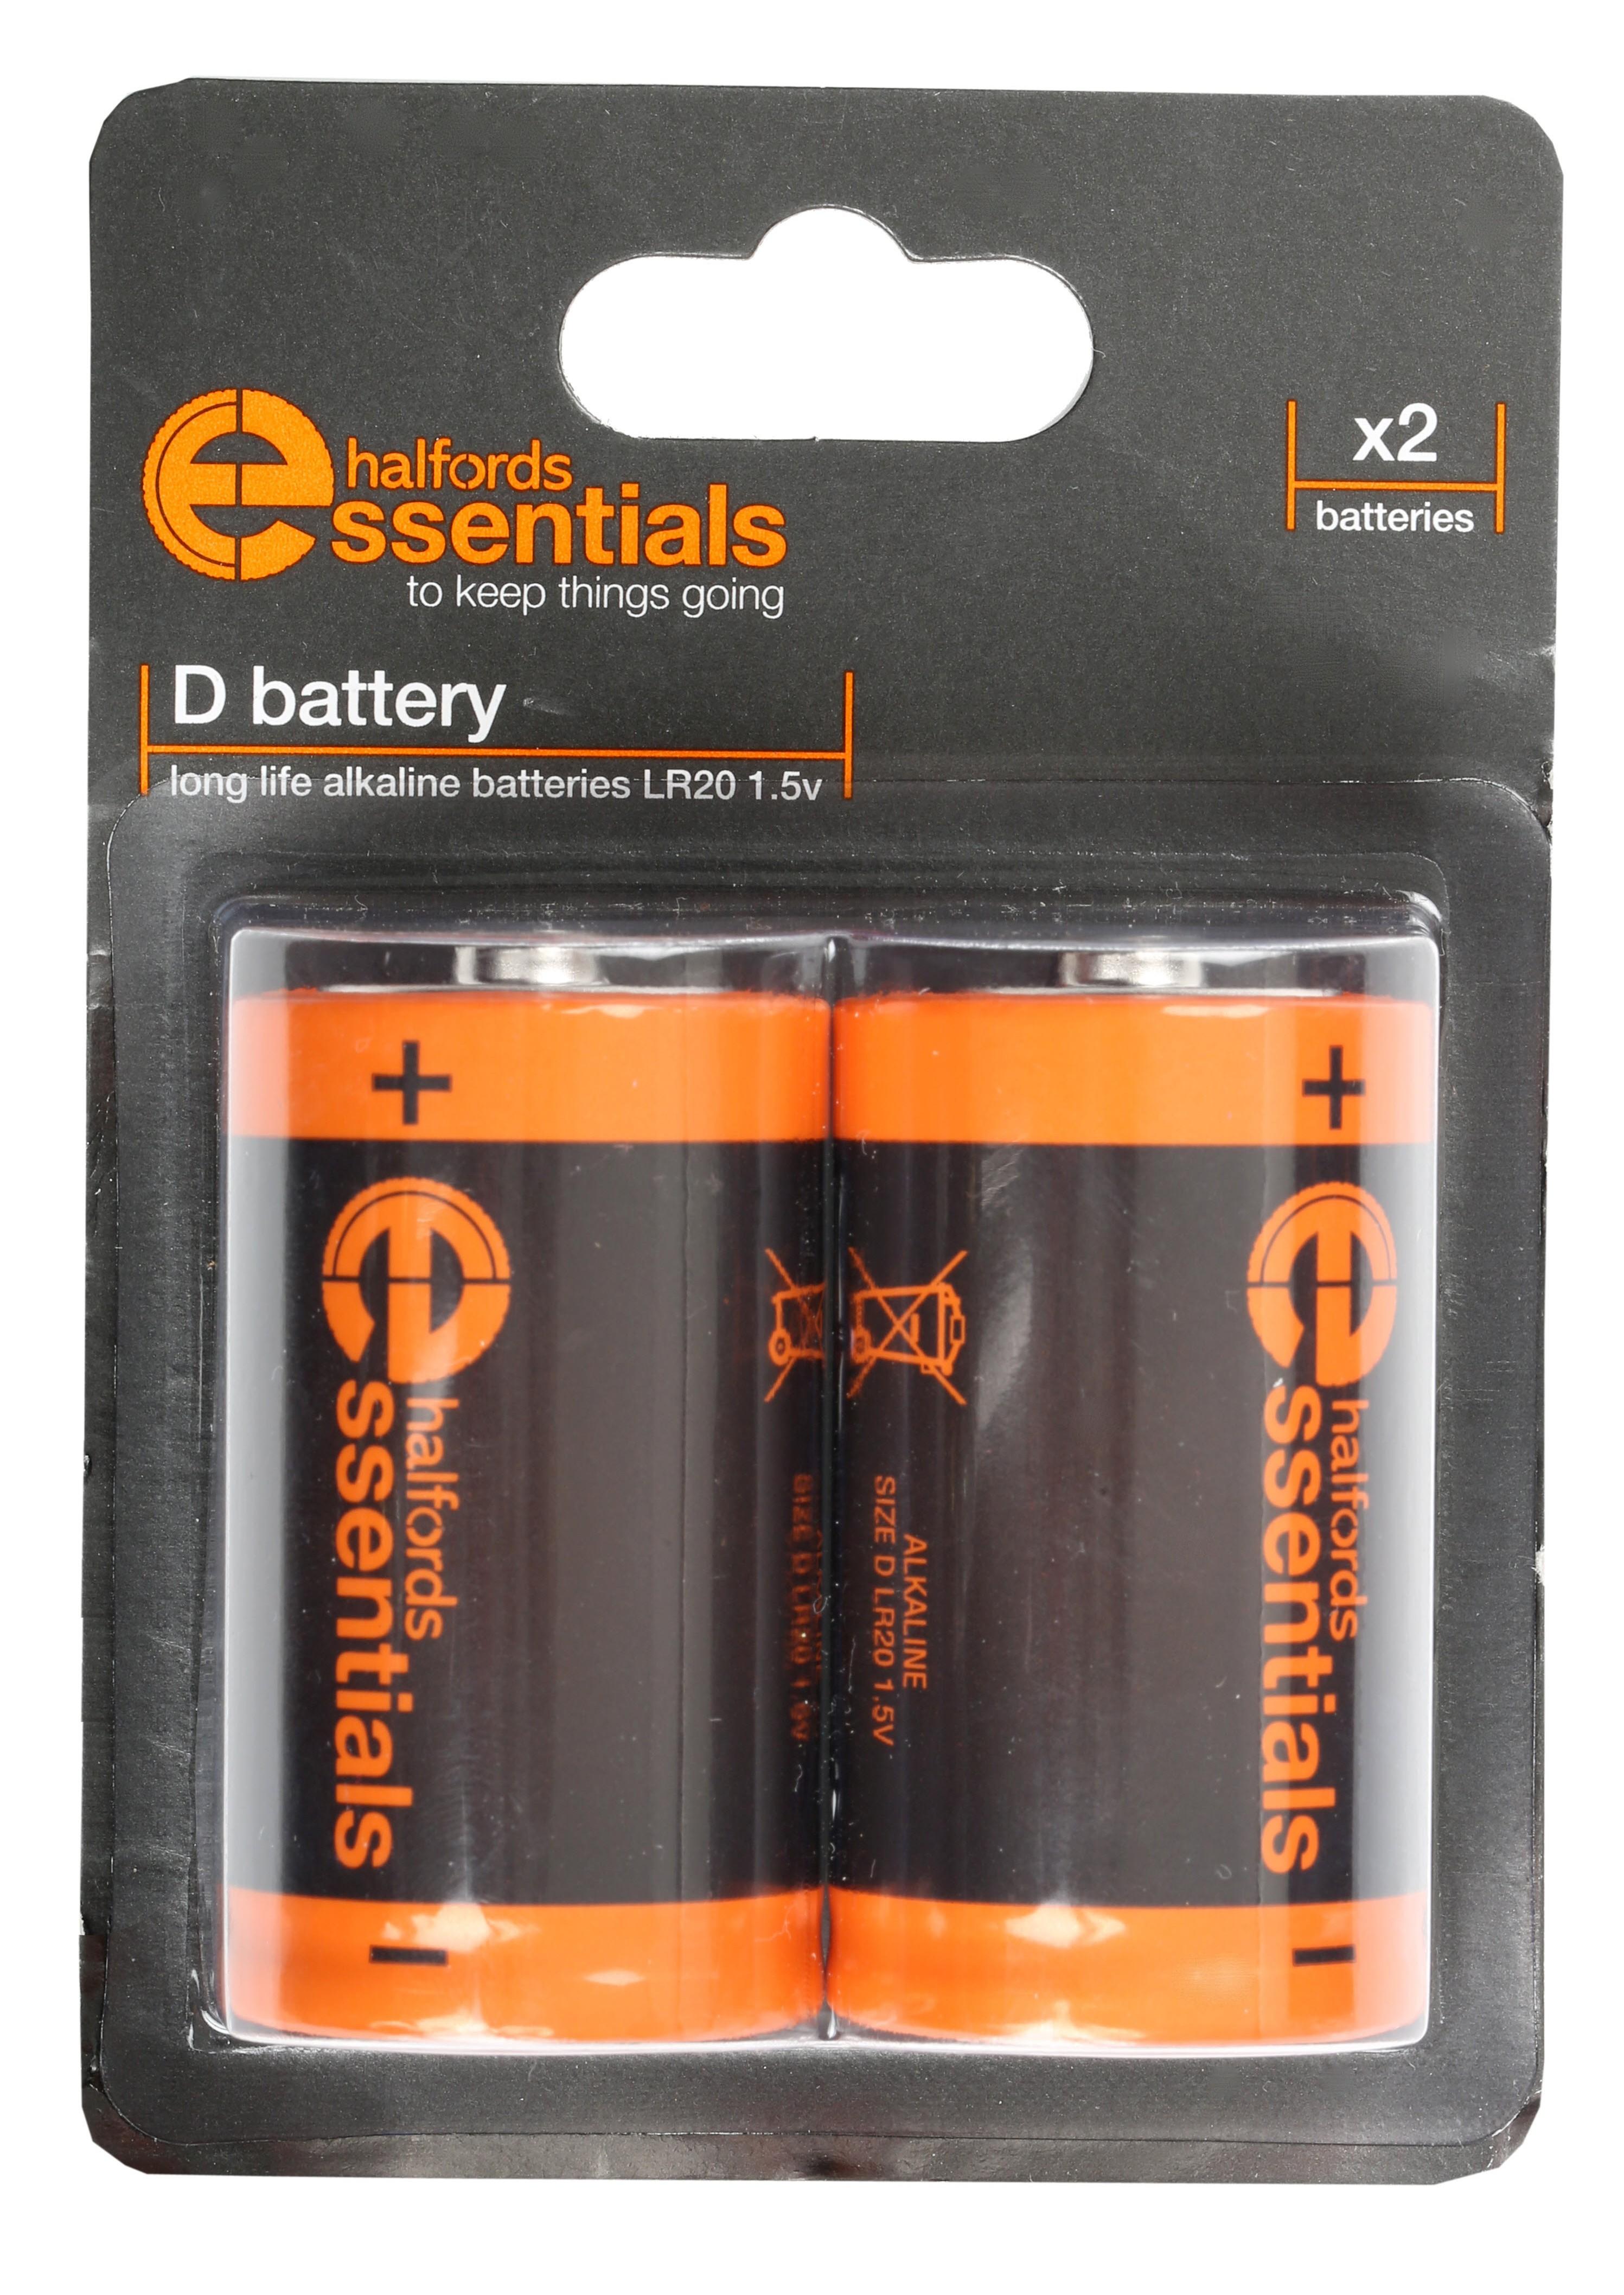 Halfords Essential Batteries D X2